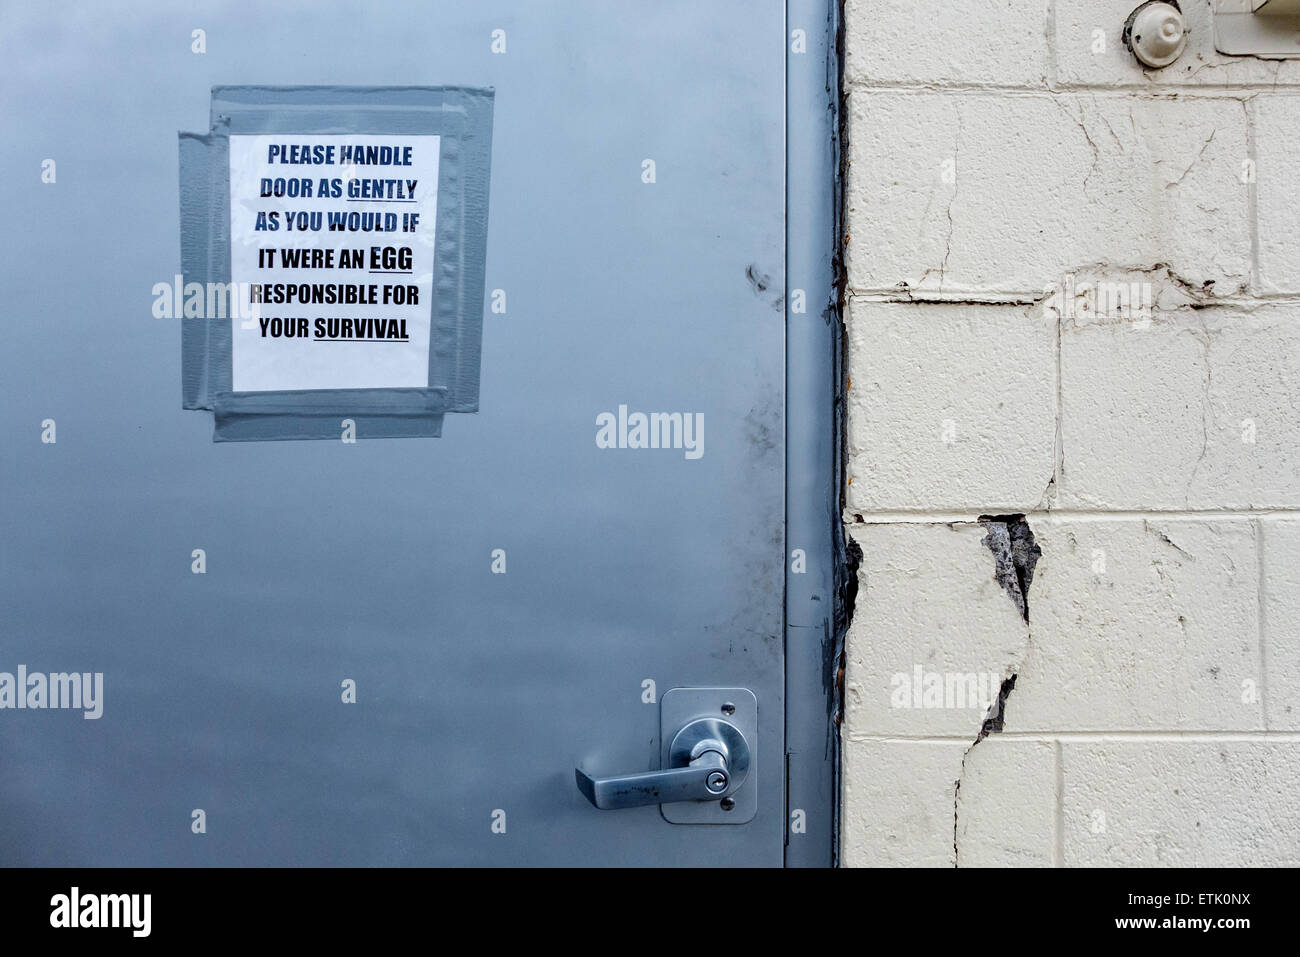 Affiche de porte d'encourager les gens à traiter la porte doucement et ne pas le laisser se ferment ou font beaucoup de bruit. Banque D'Images